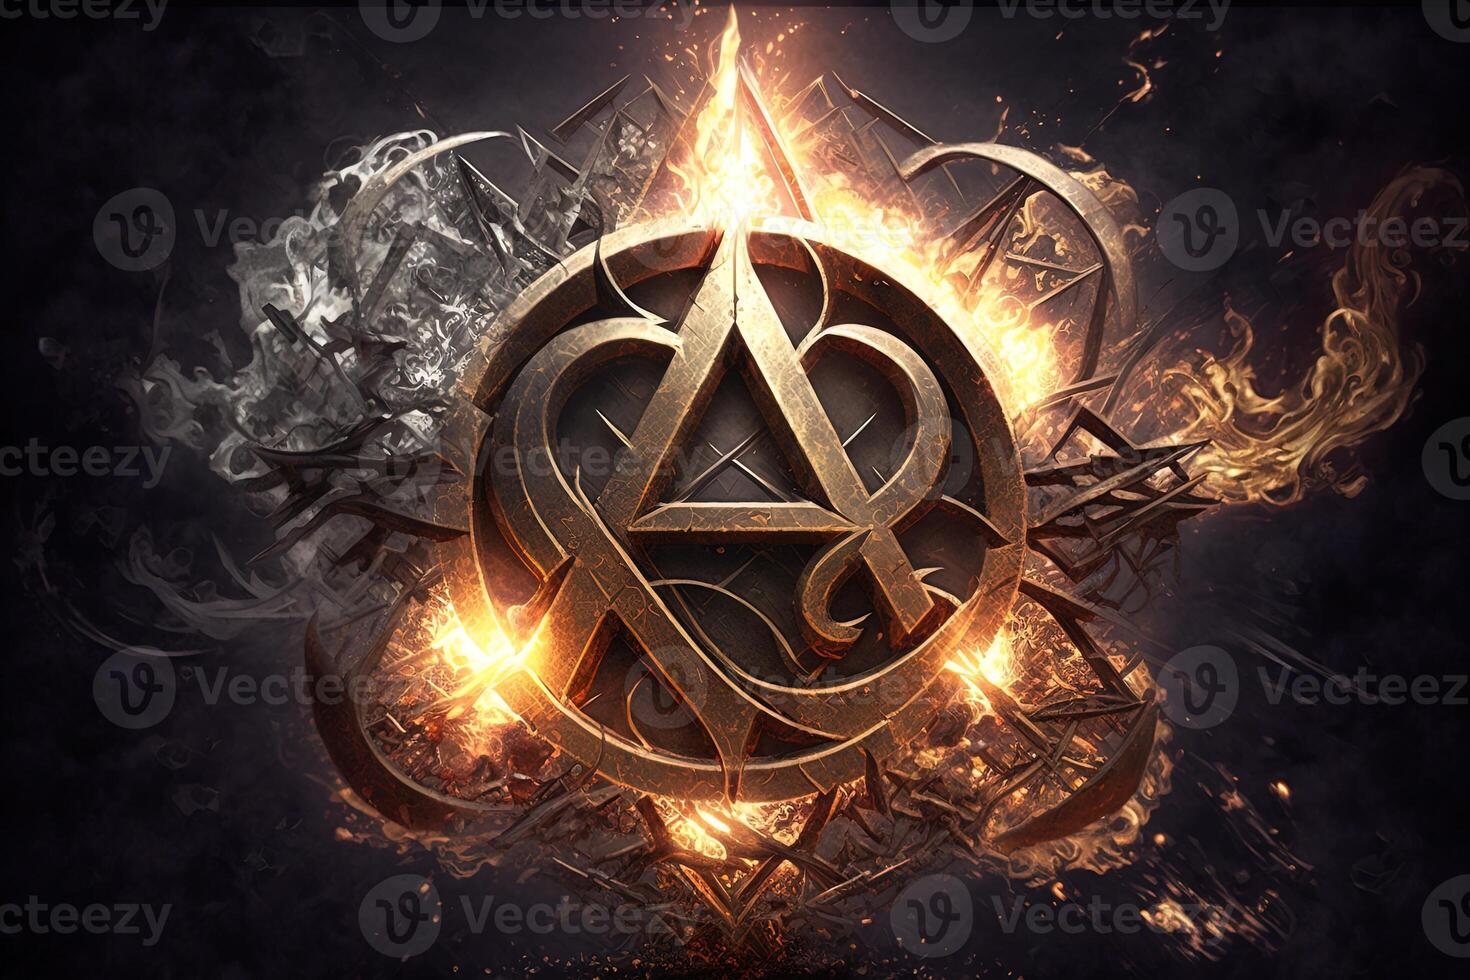 generativ ai hemlig symbol med effekt av brand och is. magi symbol, asgard symbol. runor och triangel symbol med guld och metall Färg. foto